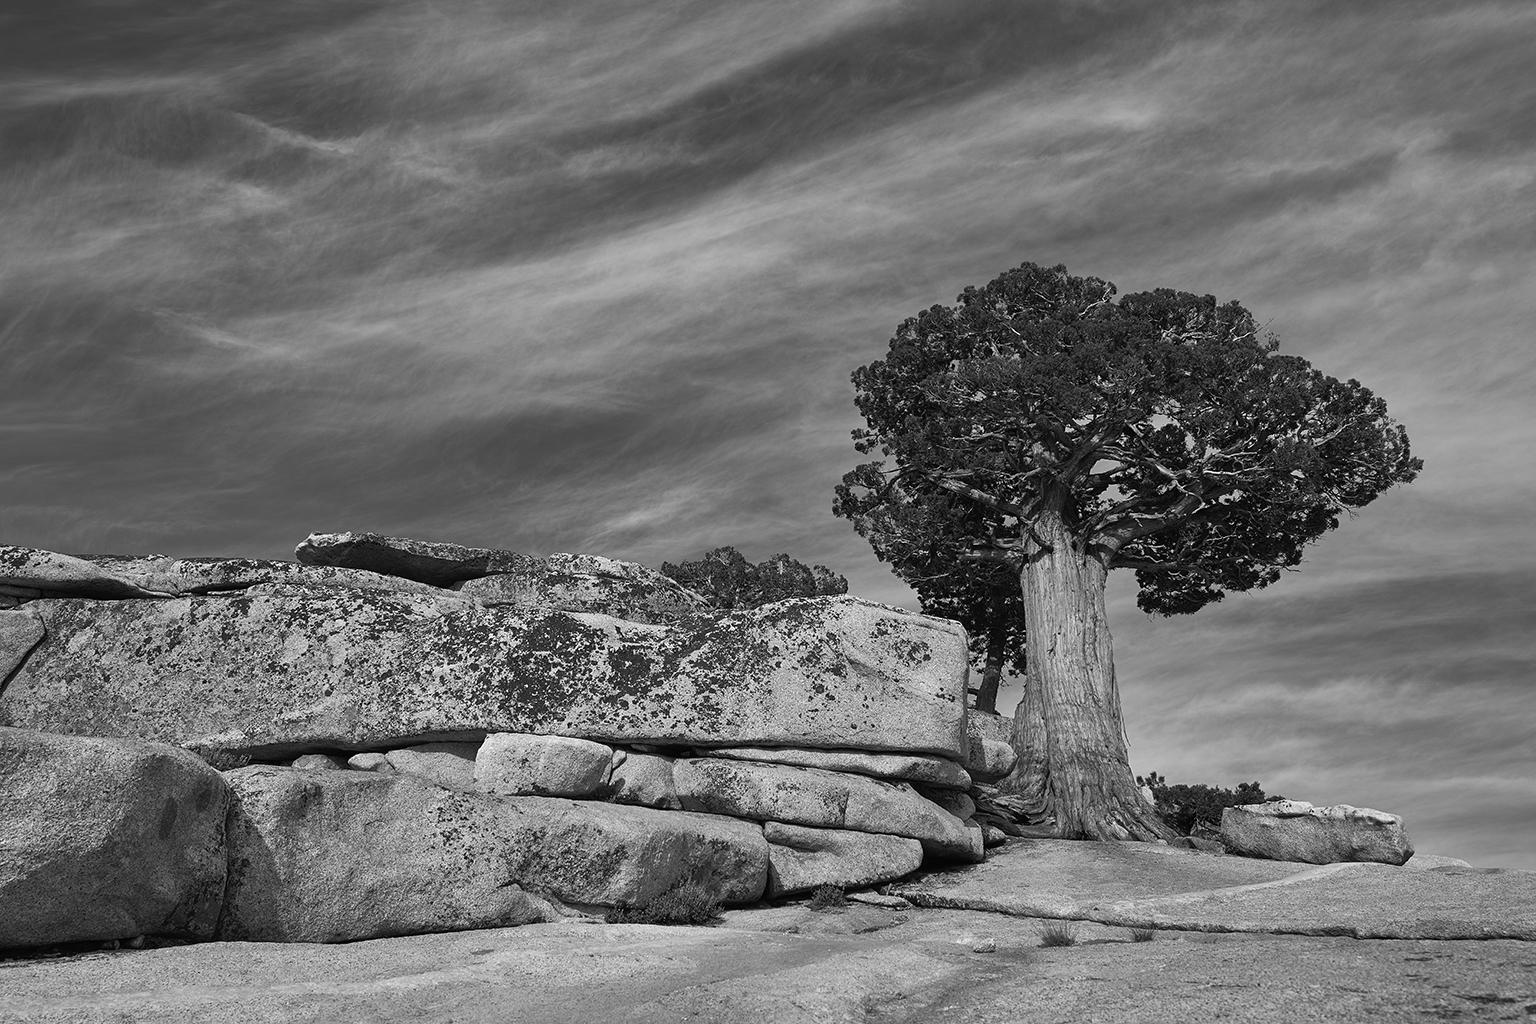 Tree Study IV – Großformatige b/w-Fotografie eines einsamen antiken Baumes in Landschaft